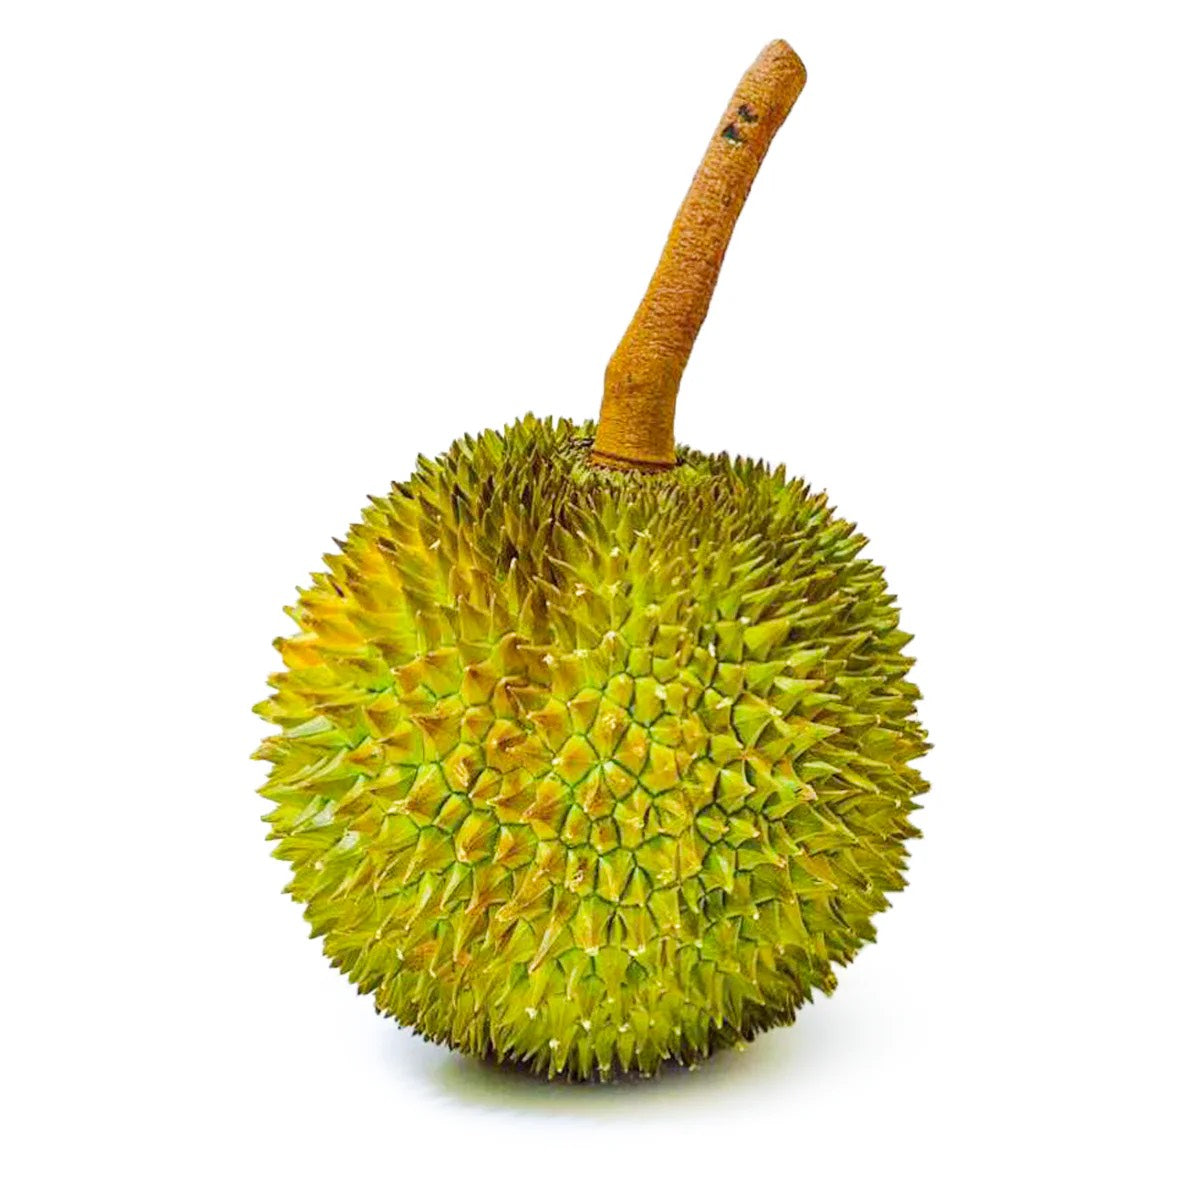 Thai Kanyao Durian (lb) $15/LB (About 3.5LB)